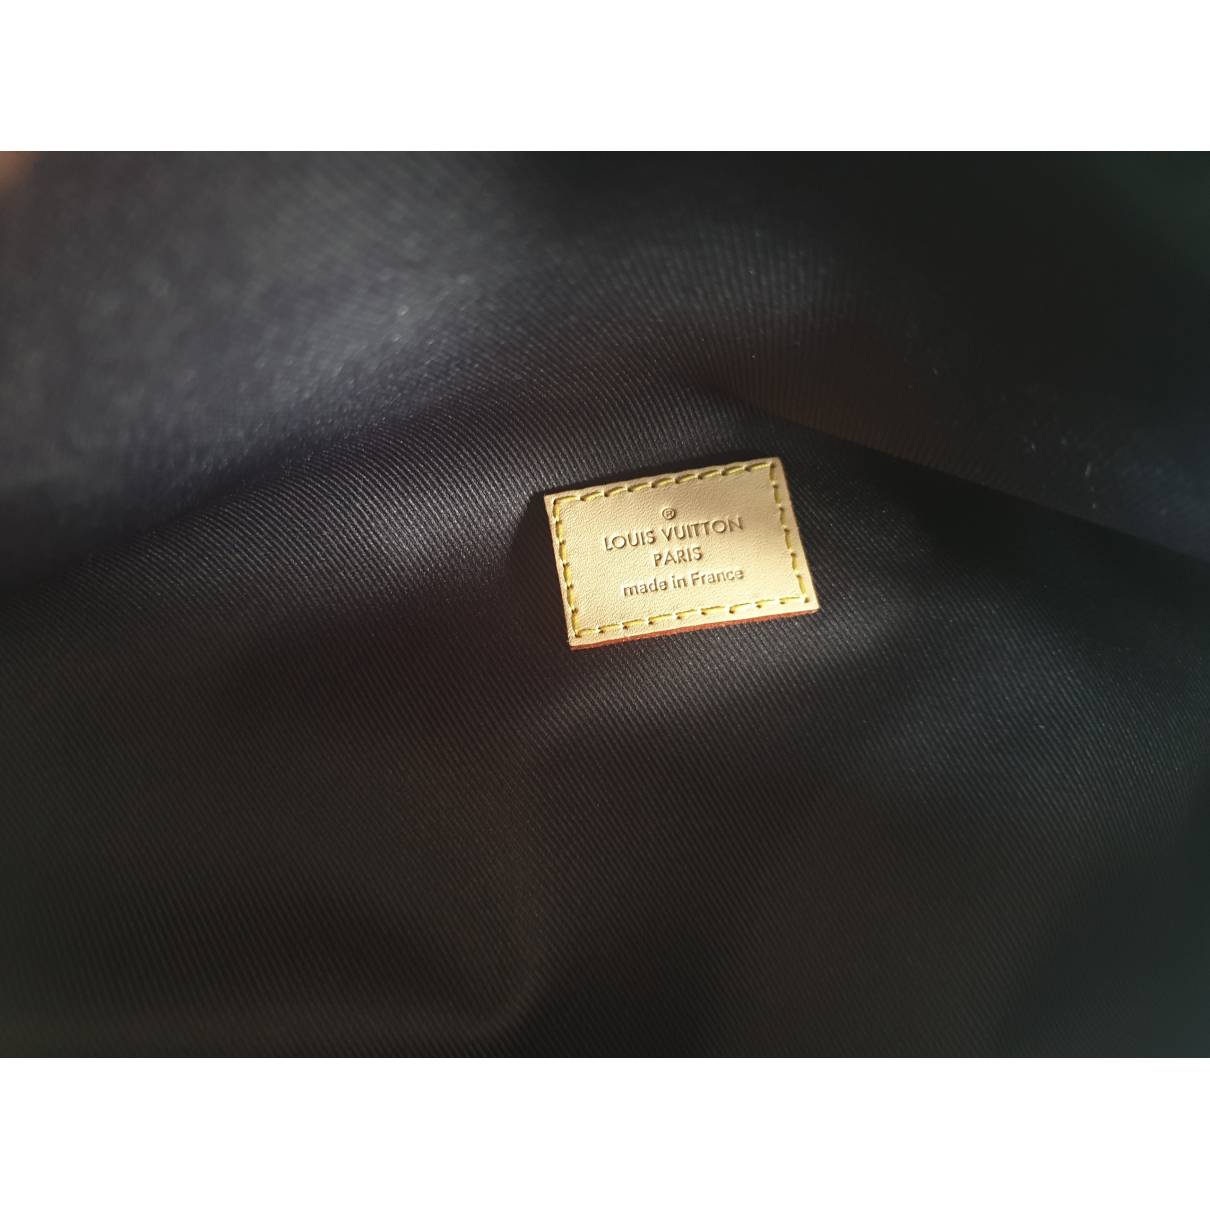 Bum bag / sac ceinture cloth handbag Louis Vuitton Brown in Cloth - 32587914